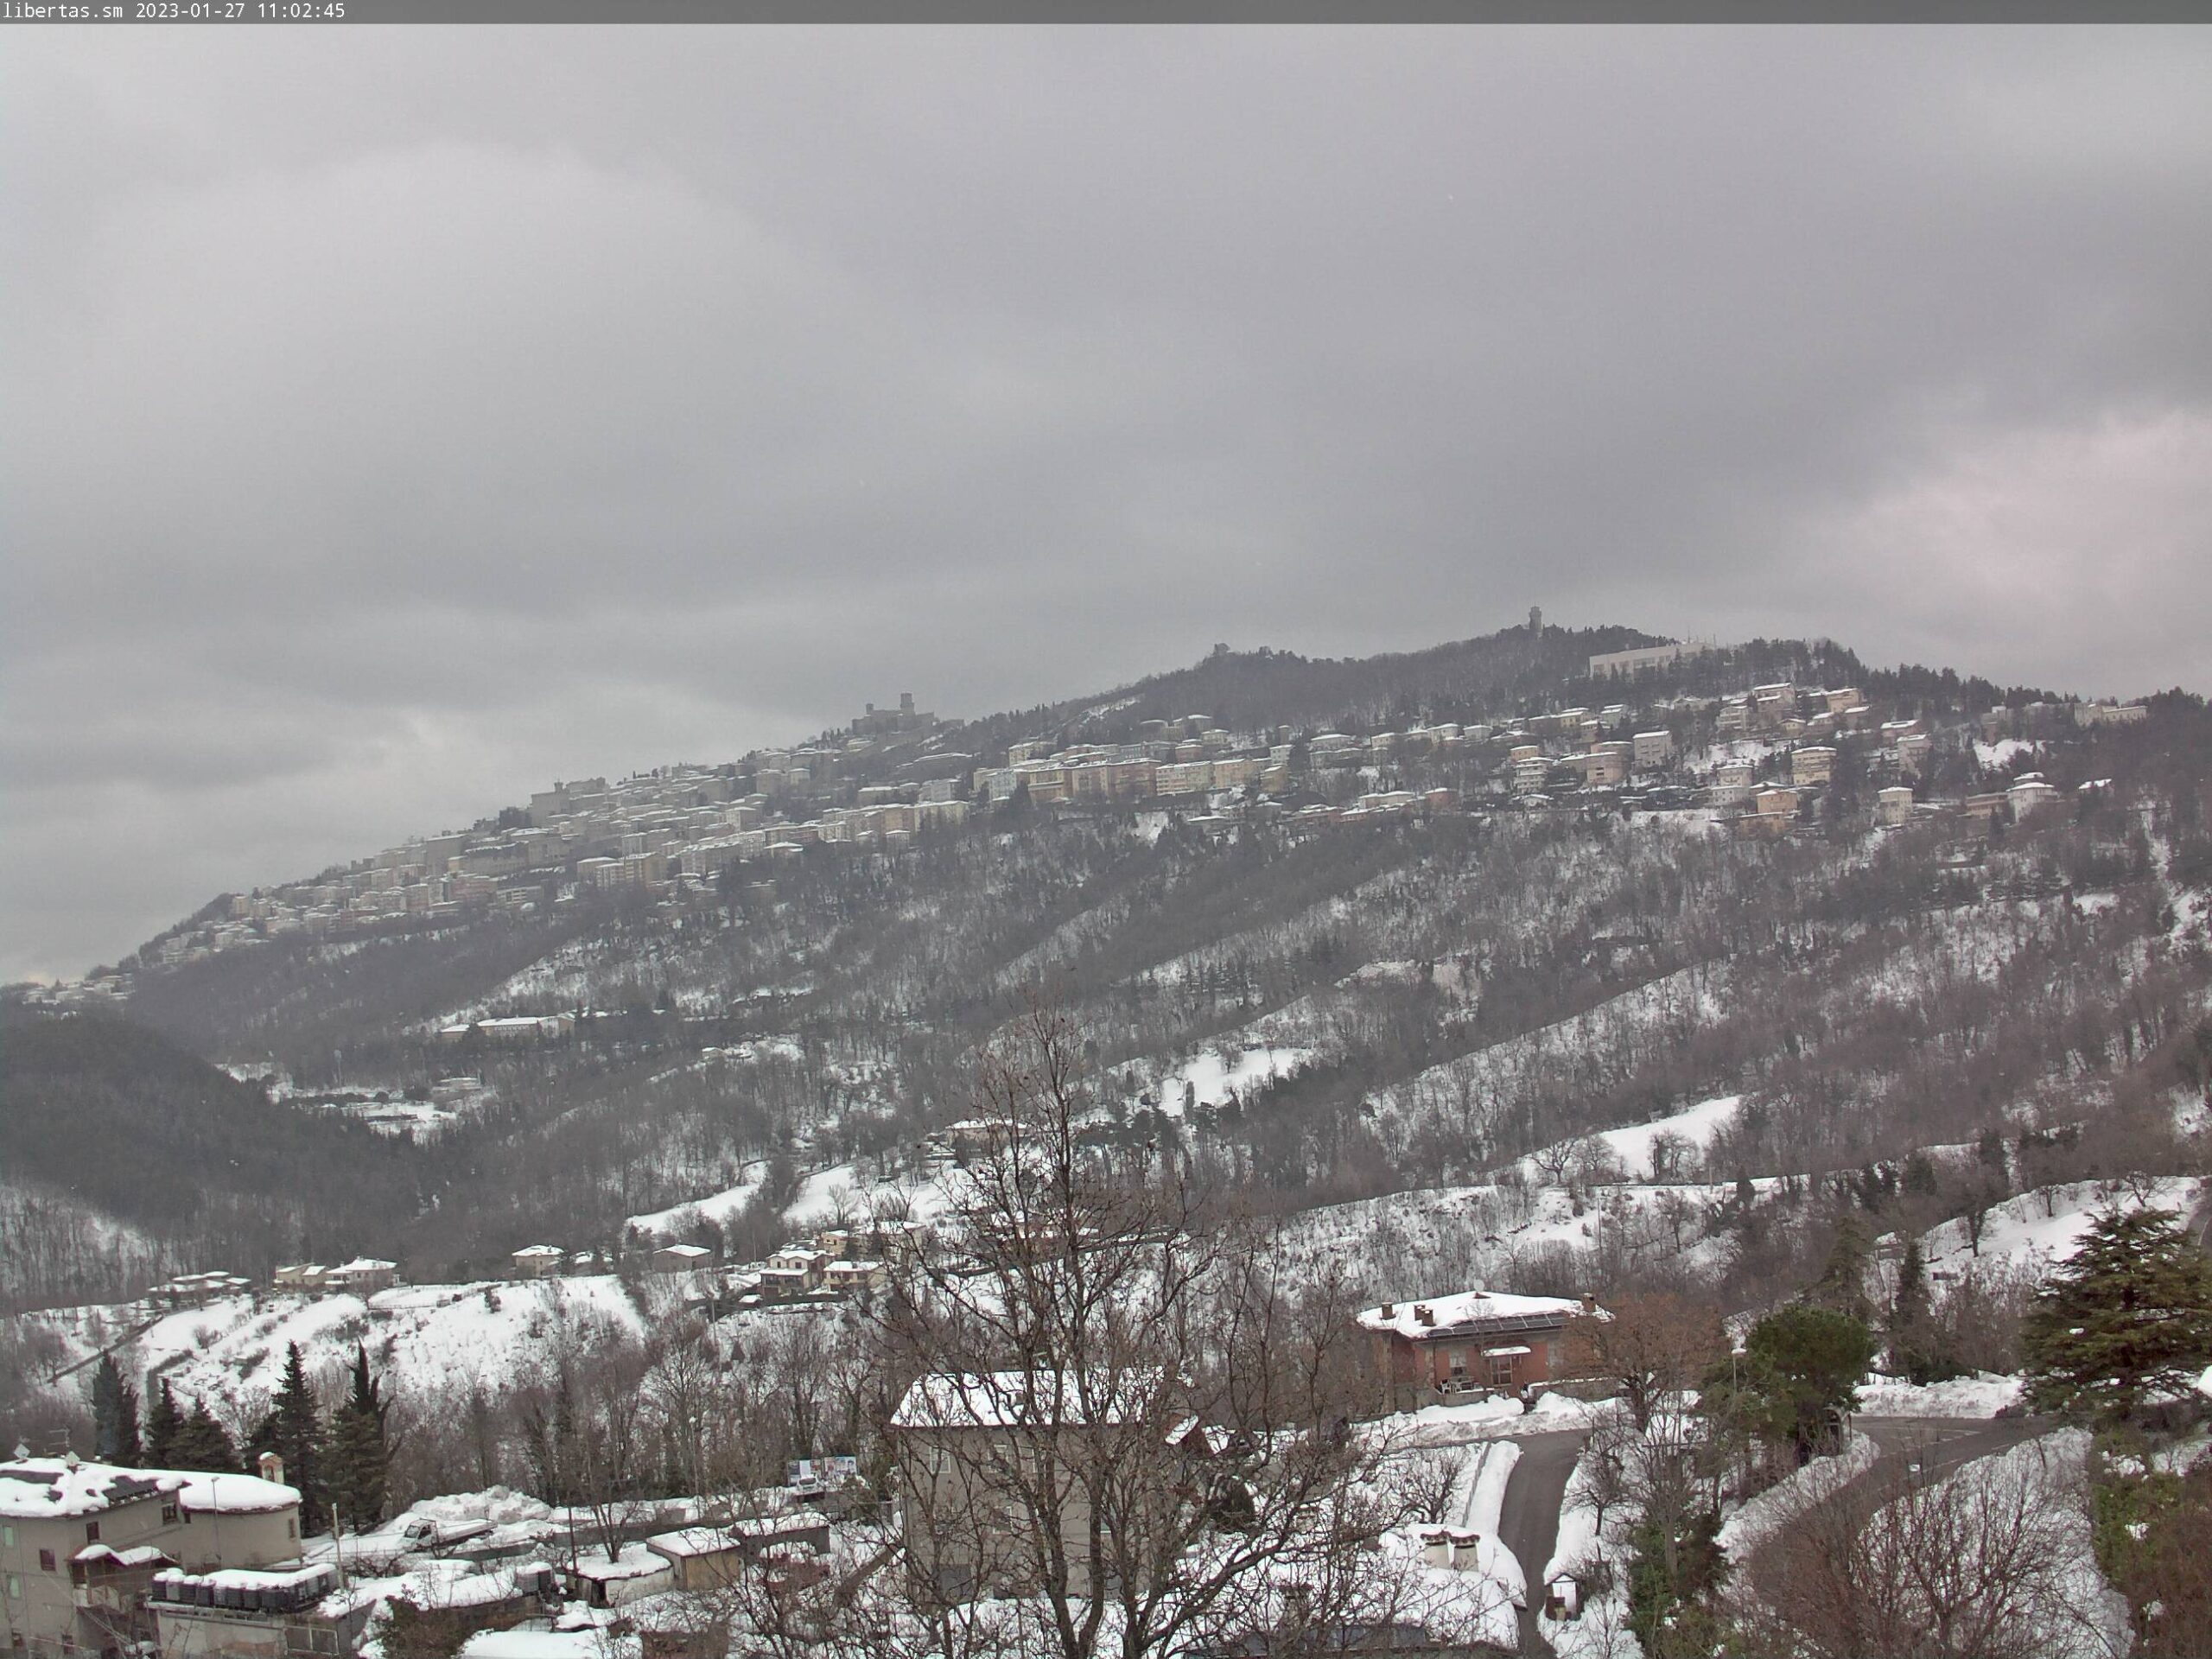 San Marino. Meteo: weekend con venti freddi da nordest, cielo coperto e nevischio